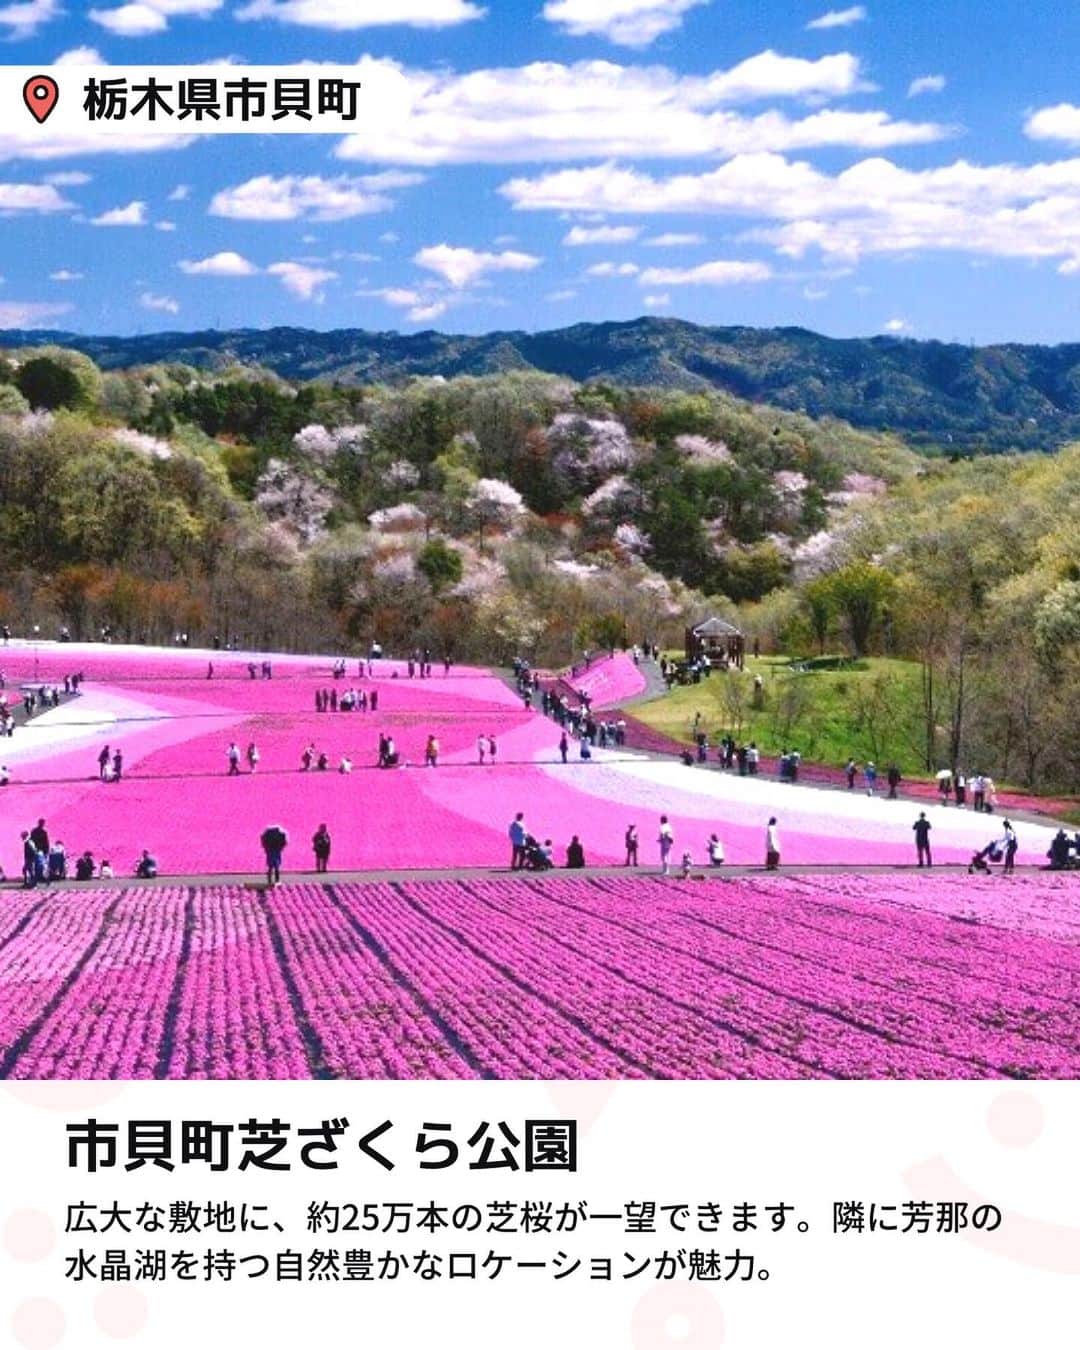 iko-yo（いこーよオフィシャル）さんのインスタグラム写真 - (iko-yo（いこーよオフィシャル）Instagram)「今回ピックアップしたのは「関東 おすすめ大規模芝桜スポット6選」 ーーーーーーーーーーーーーーーーーー  📍千葉県袖ケ浦市 【東京ドイツ村】 「東京ドイツ村」の芝桜は、関東最大級の面積を誇ります。5万平方メートルという広大な敷地に咲き誇る約7万株の芝桜はまさに圧巻！　 広大な園内を歩いて観賞するほか、車に乗ったまま周ることもできるので、小さな子供連れでも安心です。さらに、アスレチックや動物園など多彩な施設もあり、1日中遊ぶことができますよ。  📍千葉県千葉市 【富田さとにわ耕園】 12万株の芝桜をはじめ、澄んだブルーが美しいネモフィラや、爽やかなオレンジ色のポピーなど、春の花々が5月頃まで楽しめます。色とりどりの花々が咲き誇る花畑はSNS映え間違いなし！　入園無料なのもうれしいポイントです。  📍埼玉県秩父市 【羊山公園　芝桜の丘】 4月上旬から5月上旬の期間に、40万株以上の芝桜が楽しめます。9種類の芝桜が美しいデザインで植裁された花畑は写真映え抜群！また、「羊山公園」の名前の由来になったといわれる「羊とのふれあい牧場」やアスレチック設備が充実した「わんぱく広場」もあり、子供も思い切り楽しめます。  📍 栃木県芳賀郡市貝町 【市貝町芝ざくら公園】 八溝の山々の緑に囲まれ、隣に芳那の水晶湖を持つ自然豊かなロケーションが魅力の公園。2.4ヘクタールの広大な敷地を誇り、約25万本の芝桜の風景が一望できます。  📍群馬県高崎市 【みさと芝桜公園】 2.9ヘクタールの敷地内に約26万株の芝桜が咲き誇ります。芝桜の丘の中心には、七夕伝説の織姫が置き忘れた桃色の羽衣をイメージした赤、白、ピンクの芝桜を帯状にデザイン。幻想的な風景は家族の記念写真スポットとしてもぴったりです！  📍群馬県太田市 【八王子山公園（北部運動公園）】 入園無料！毎年春に、桜や芝桜、ネモフィラ、ツツジなどが咲き誇る花の名所として知られる公園です。4月下旬頃には、30万株におよぶ芝桜の絨毯が見渡す限り広がります。  ※2023年4月17日時点の情報です。 最新の情報は公式HPや「いこーよ」サイトでご確認ください。 ーーーーーーーーーーーーーーーーーーー おでかけ情報量は日本最大級！ 子どもとお出かけ情報サイト「いこーよ」 「親子でおでかけしたい場所」をご紹介させていただいています！  お子さんとのおでかけの思い出の写真を、このアカウントをフォローの上#いこーよ をつけてぜひ投稿してください。魅力的な写真は、いこーよ公式SNSで紹介させていただきます！  募集中タグ＃いこーよ  「子どもと行きたい！」と思ったら保存が便利！ プロフィールのURLから「いこーよ」のサイトに行くと、他の投稿やオトクな情報などが載っています♪ ☞ @ikoyo_odekake  #いこーよ #お出かけ #おでかけ #お出かけスポット #子連れ #こどものいる暮らし #子連れスポット #いこーよお出かけ部 #千葉ママ #千葉観光 #千葉旅行 #埼玉ママ #埼玉旅行 #埼玉観光 #群馬ママ #群馬旅行 #群馬観光 #栃木ママ #栃木旅行 #栃木観光 #東京ドイツ村 #富田さとにわ耕園 #羊山公園 #芝桜の丘 #市貝町芝ざくら公園 #みさと芝桜公園 #八王子山公園 #芝桜 #芝ざくら」4月18日 22時49分 - ikoyo_odekake